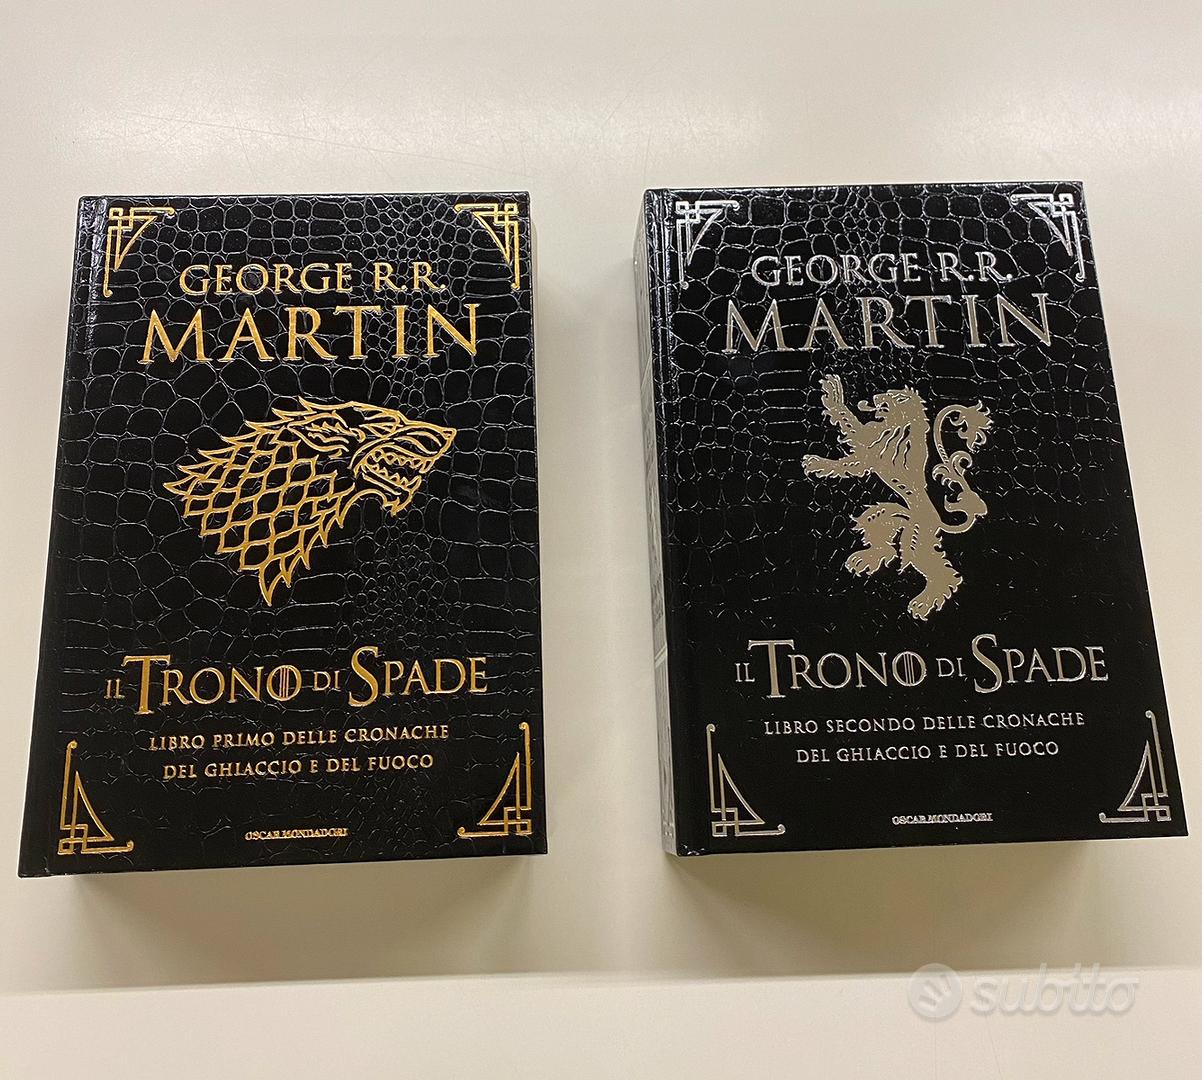 Libri Game of Thrones deluxe pelle di drago - Libri e Riviste In